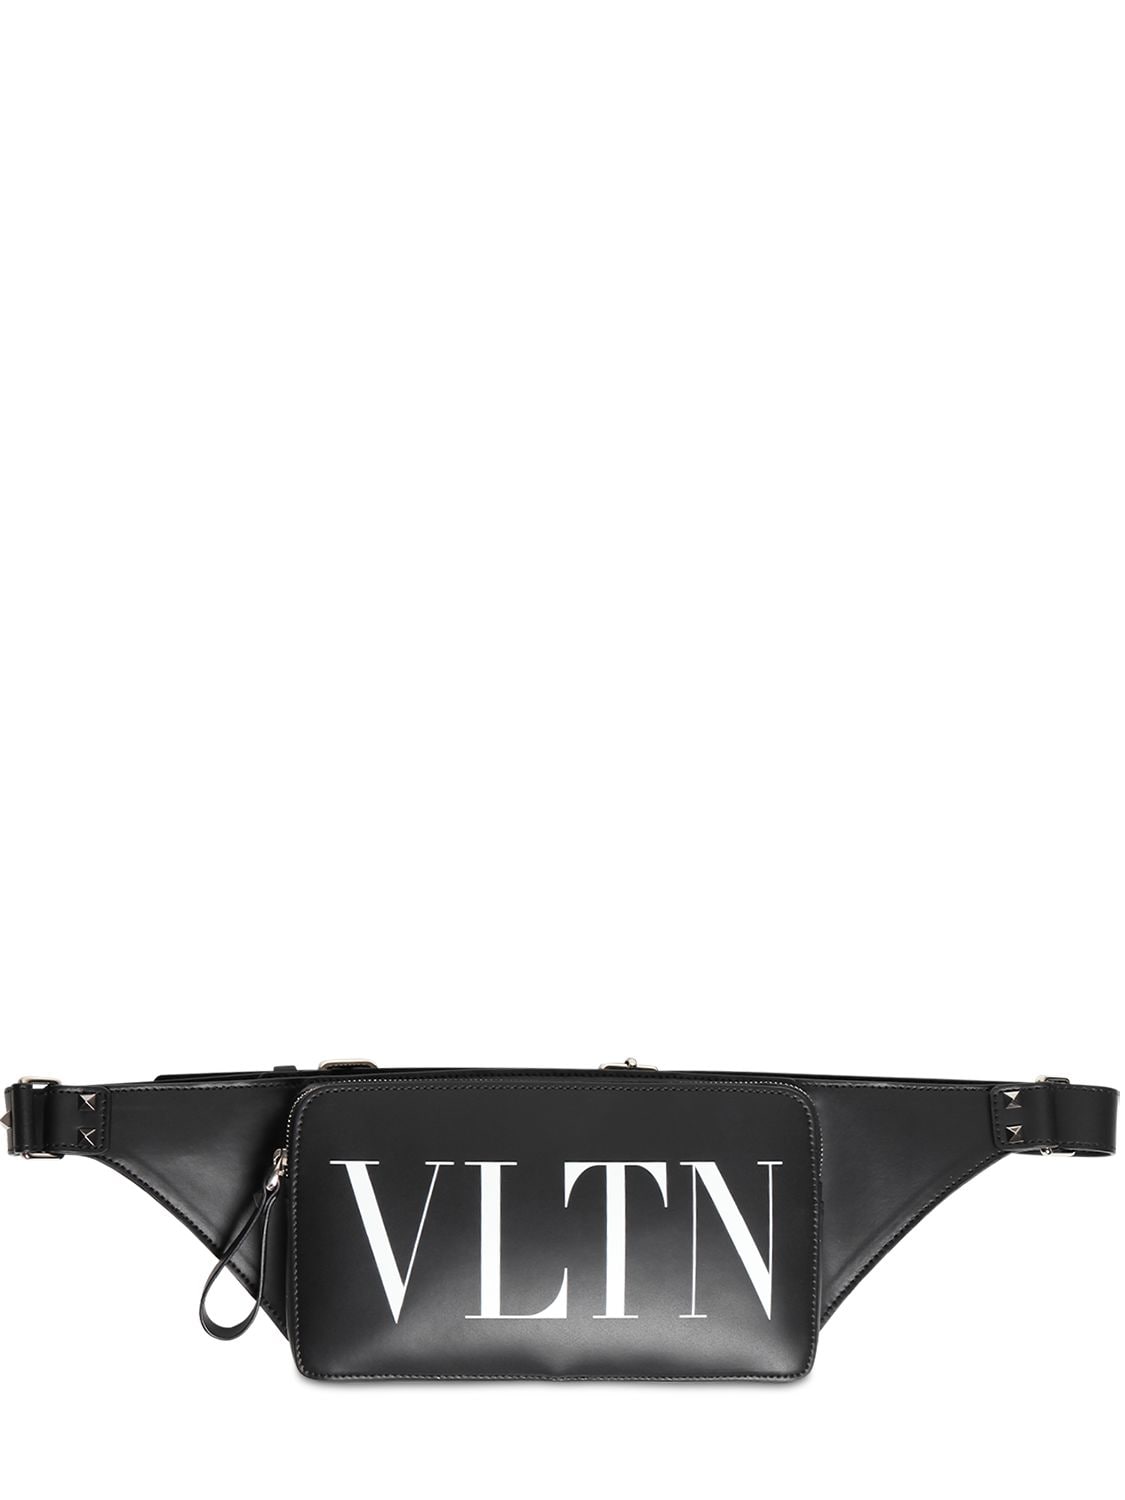 Vltn Leather Belt Bag | The Fashionisto